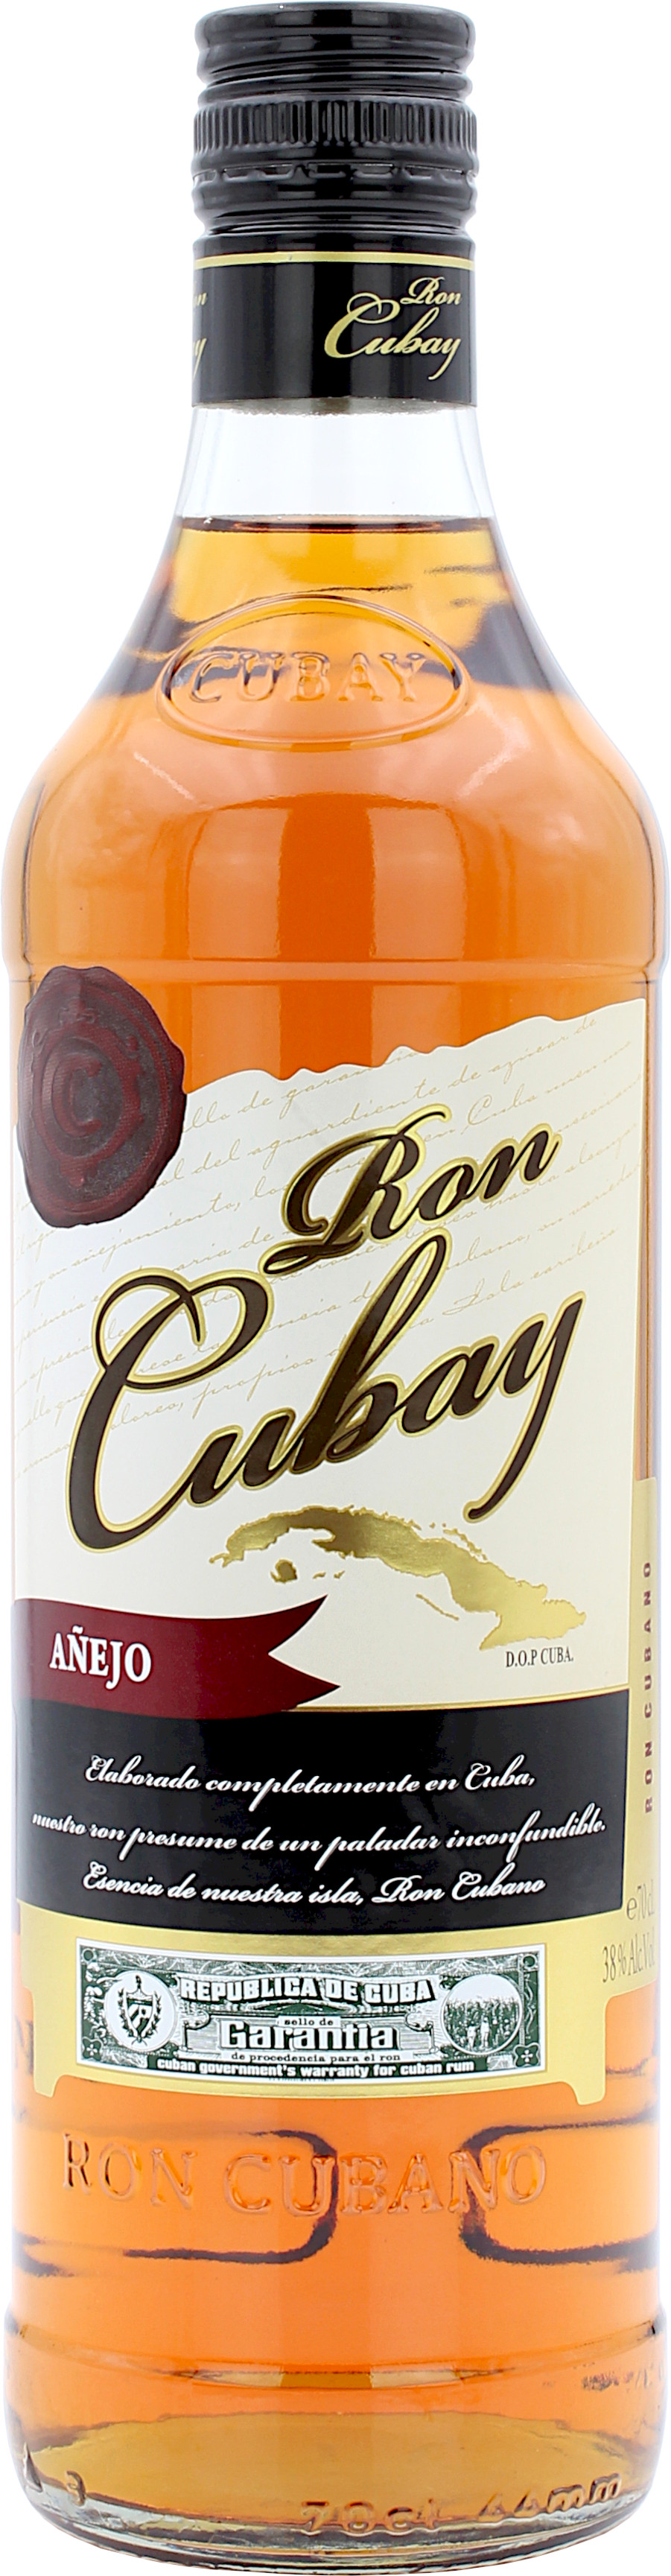 Ron Cubay Anejo 38.0% 0,7l